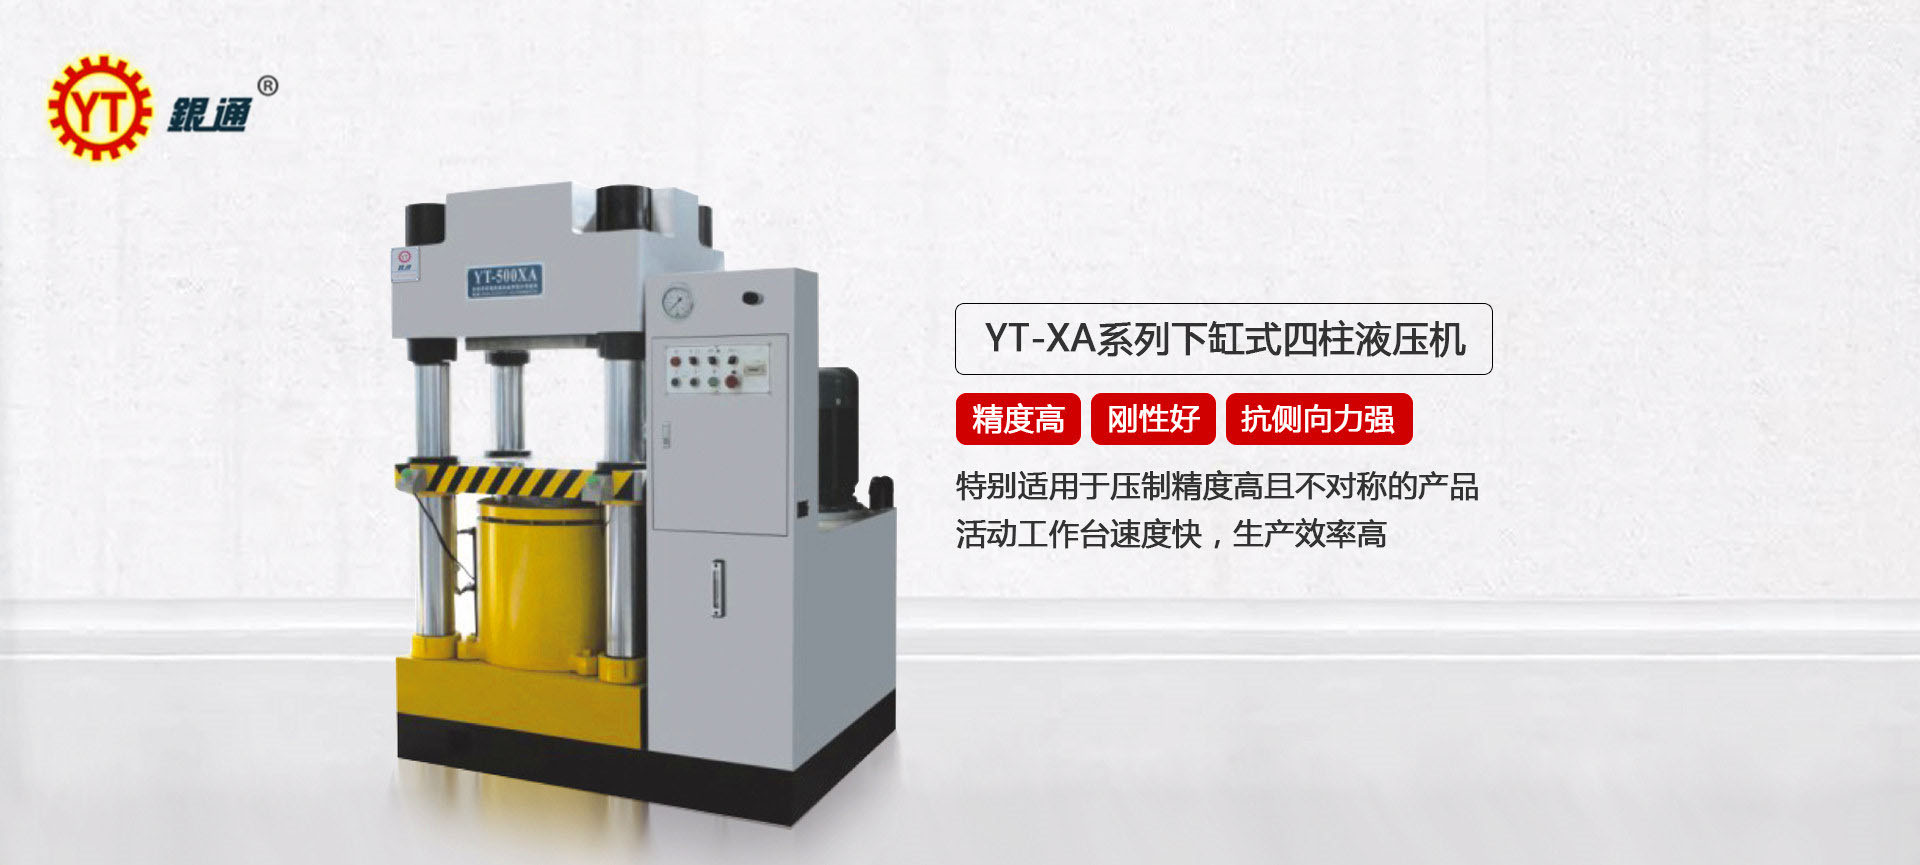 YT-X系列300吨四柱油压机